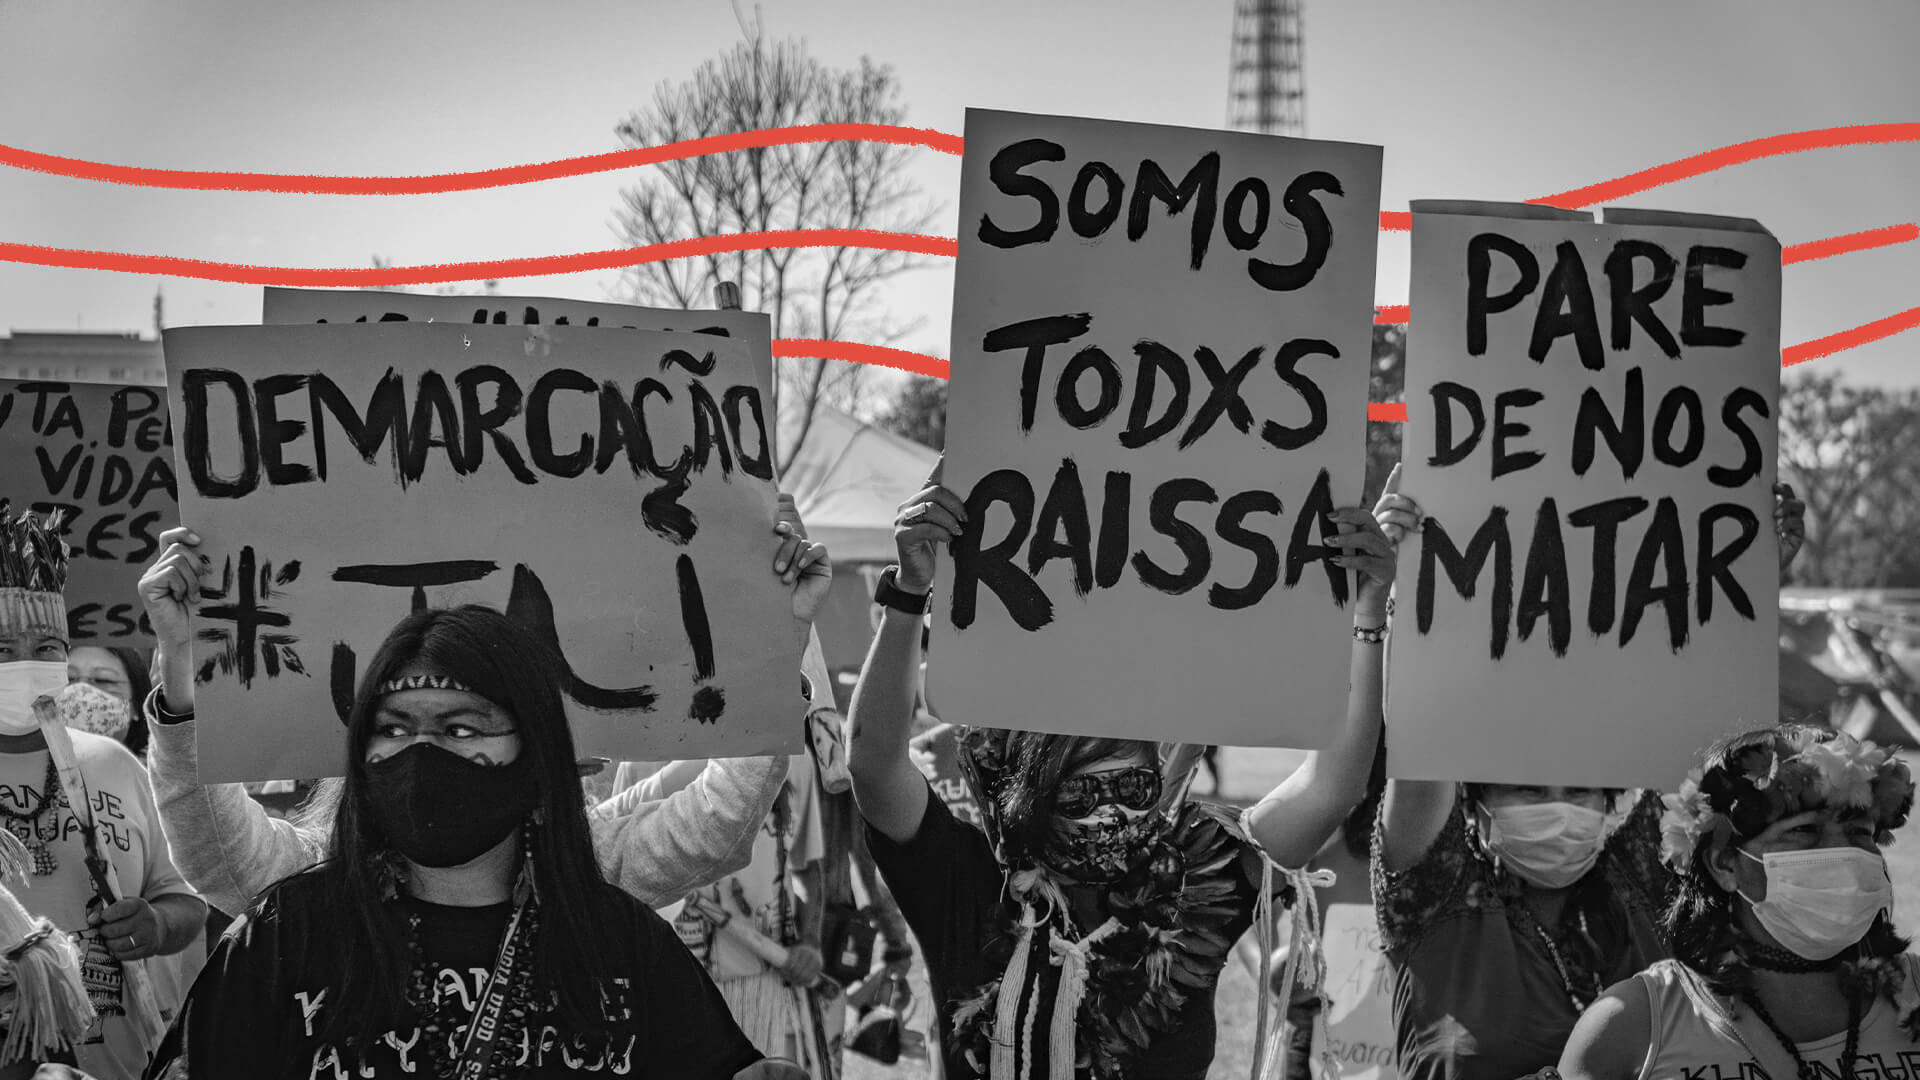 Foto em preto e branco de uma manifestação de rua em que pessoas levam cartazes onde se lê, por exemplo, "Somos todos Raissa", "Demarcação já" e "Pare de nos matar". Há intervenções de arte com linhas vermelhas